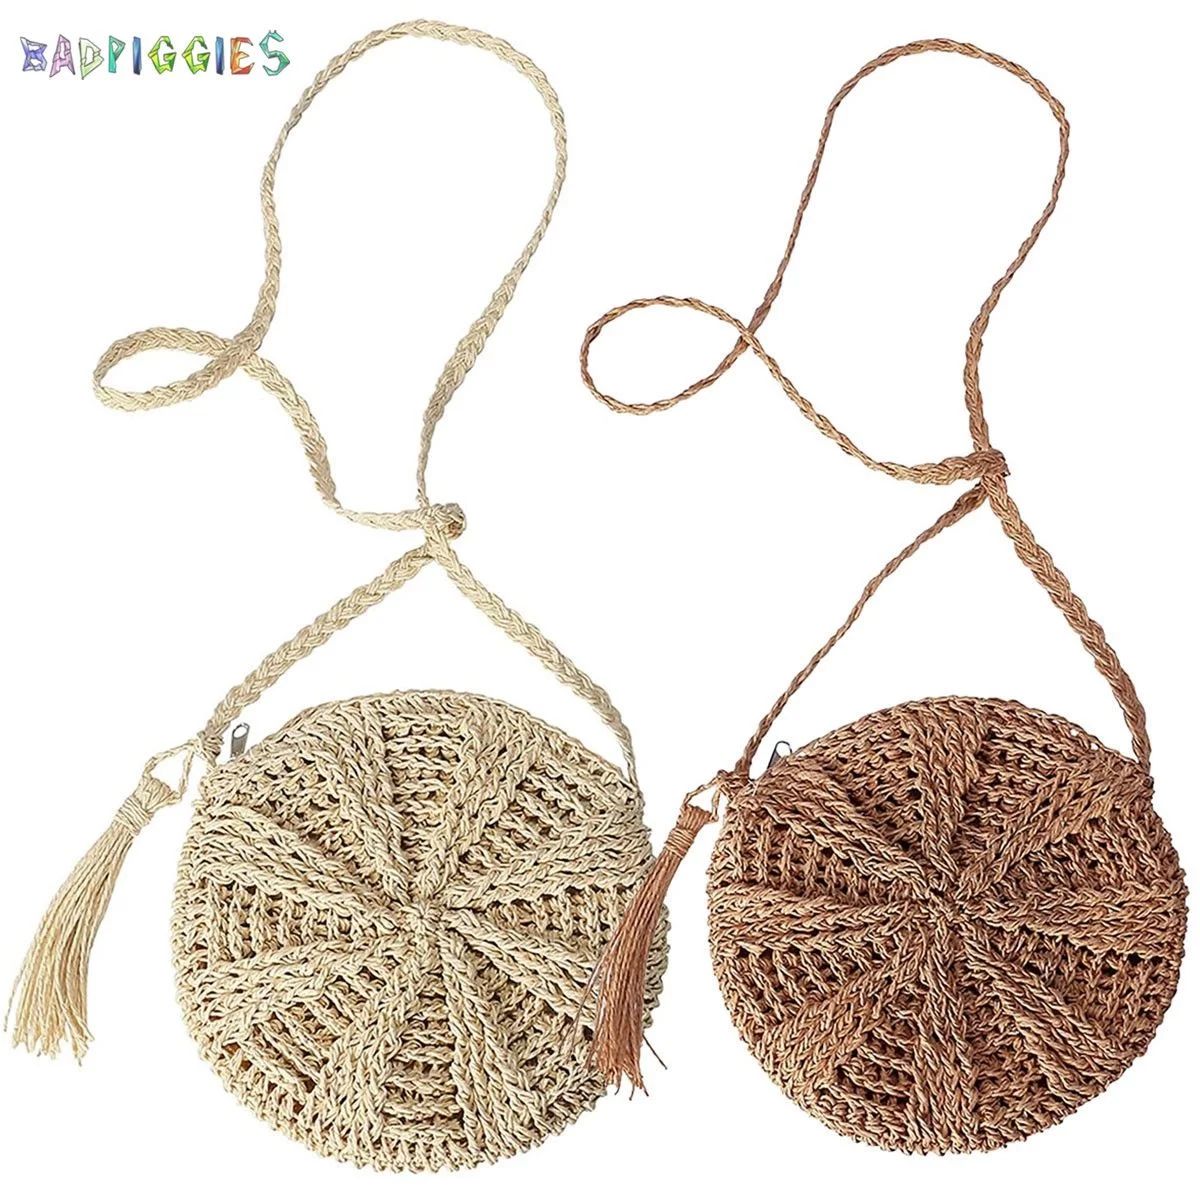 BadPiggies Women Straw Crossbody Bag Handmade Woven Phone Purse Tassels Crochet Summer Beach Shou... | Walmart (US)